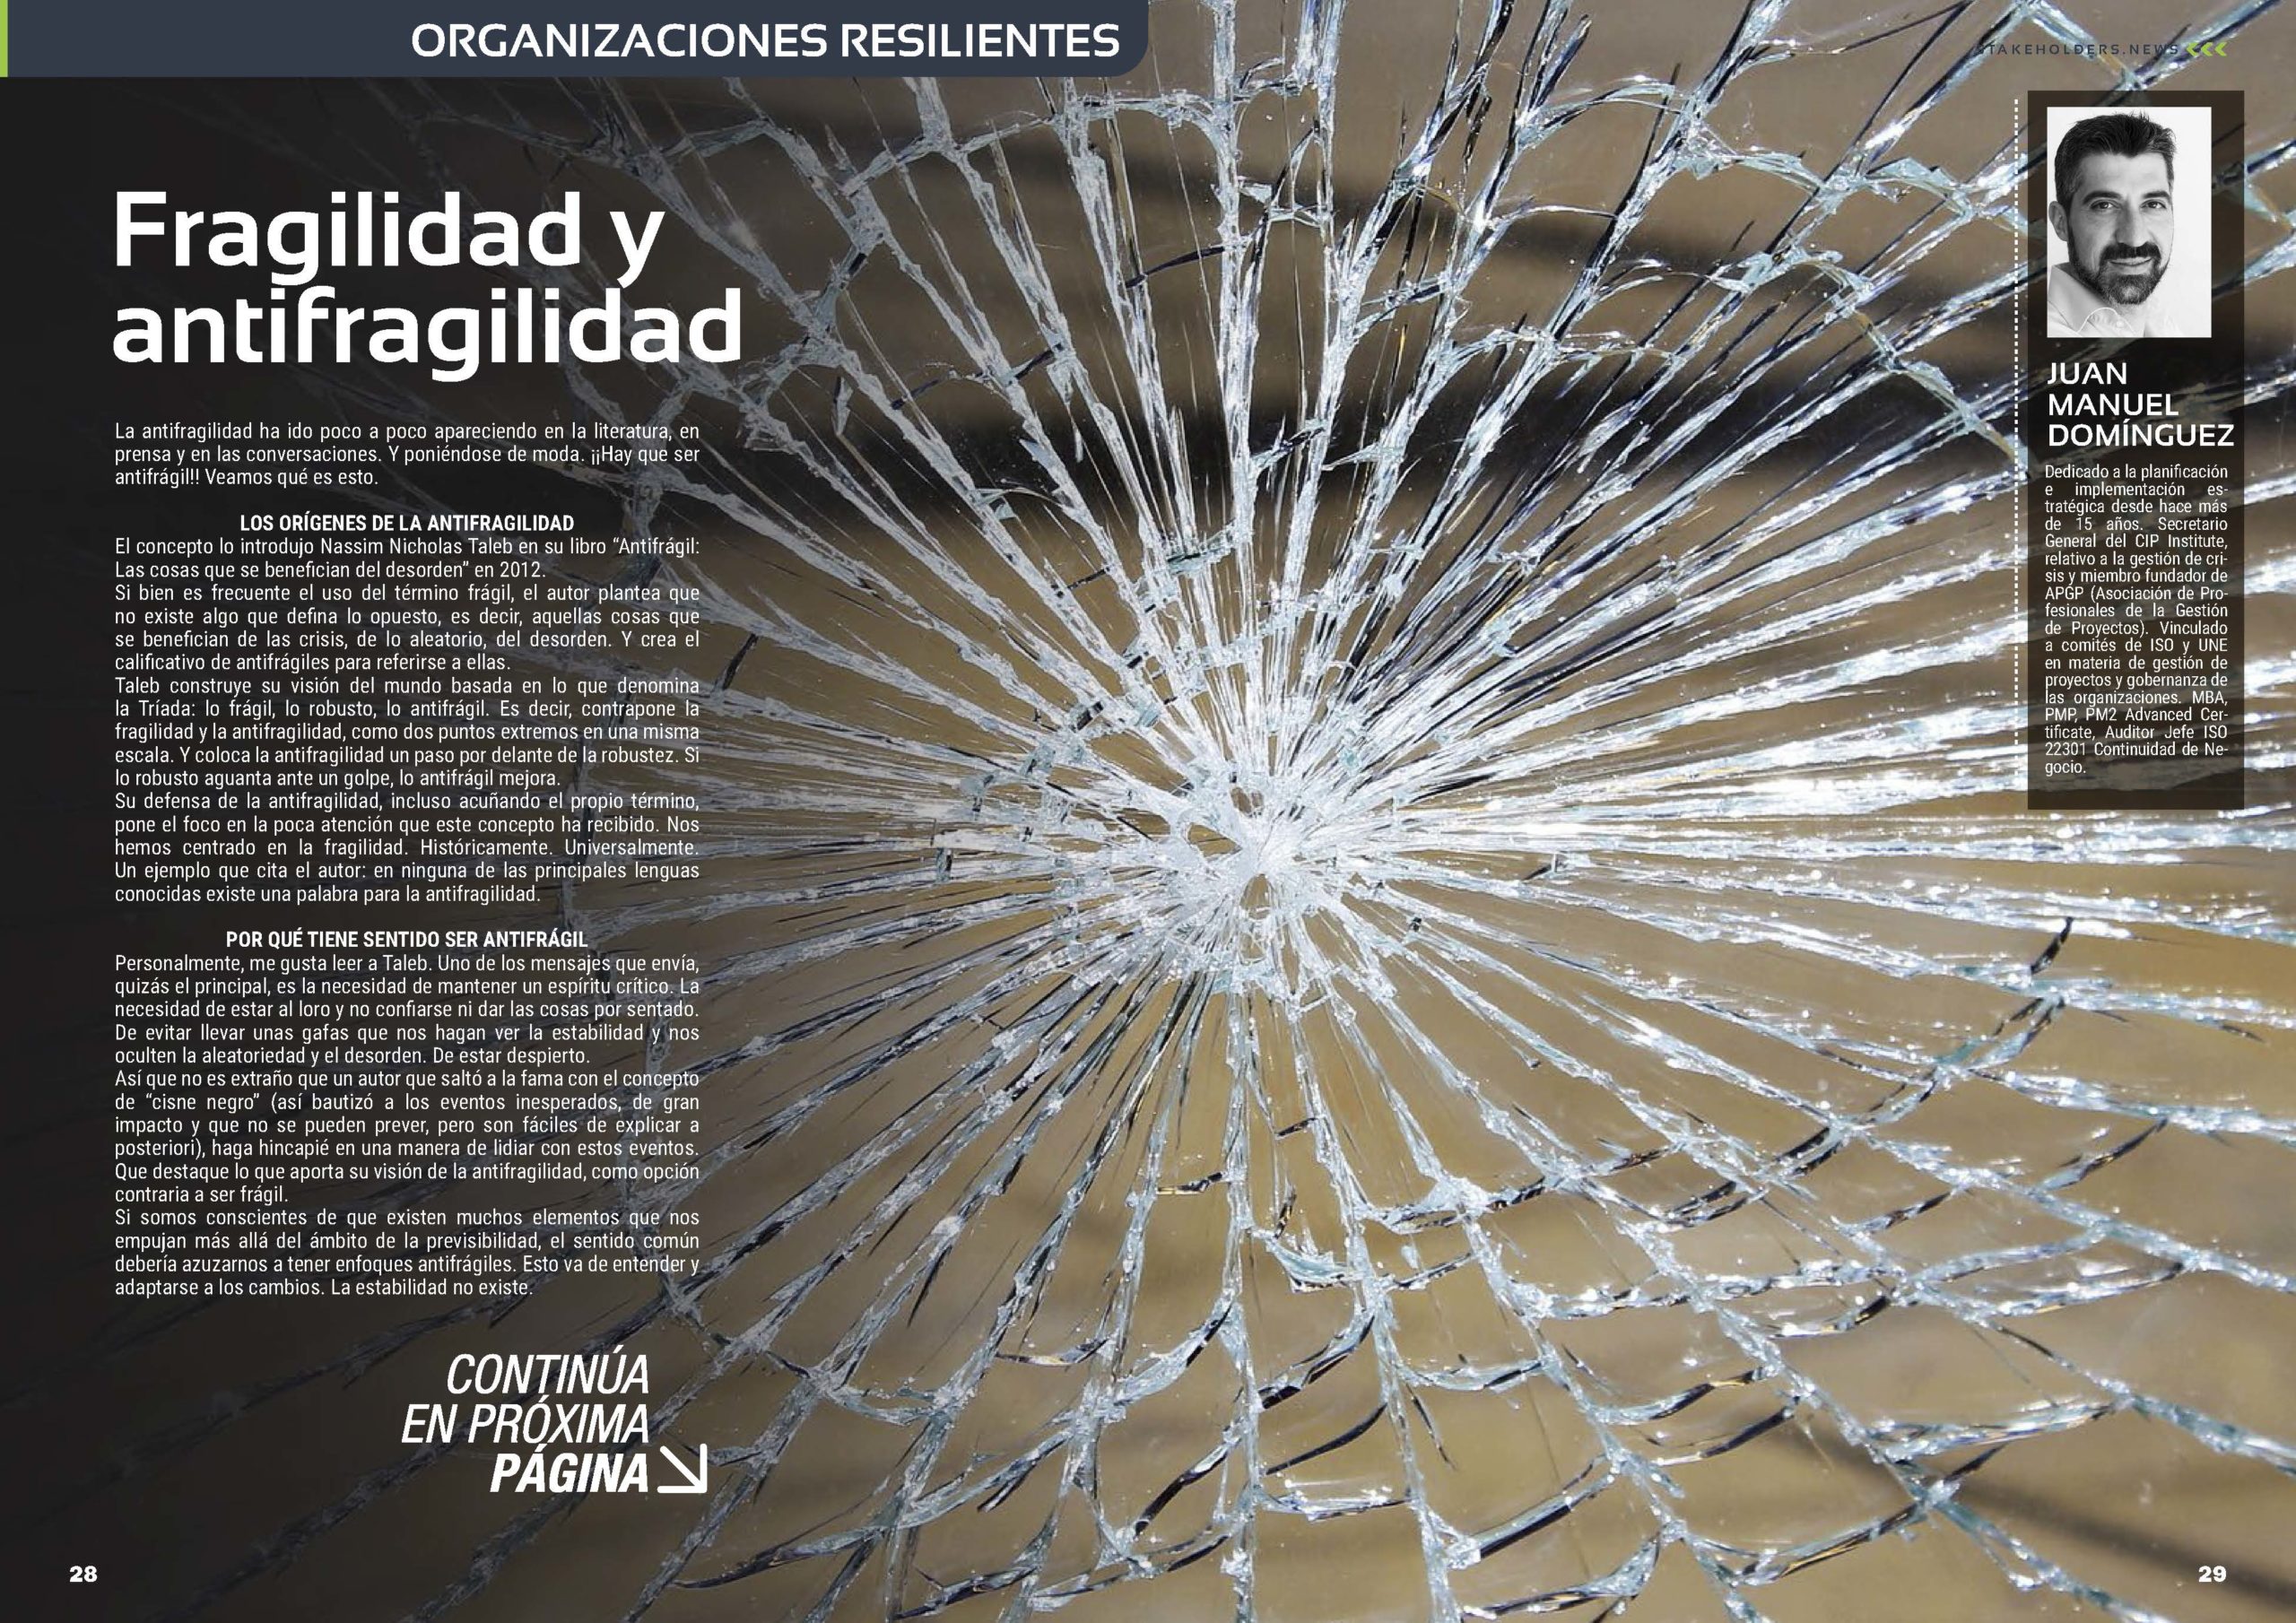 Artículo "Fragilidad y antifragilidad" de Juan Manuel Dominguez en la Revista Stakeholders.news